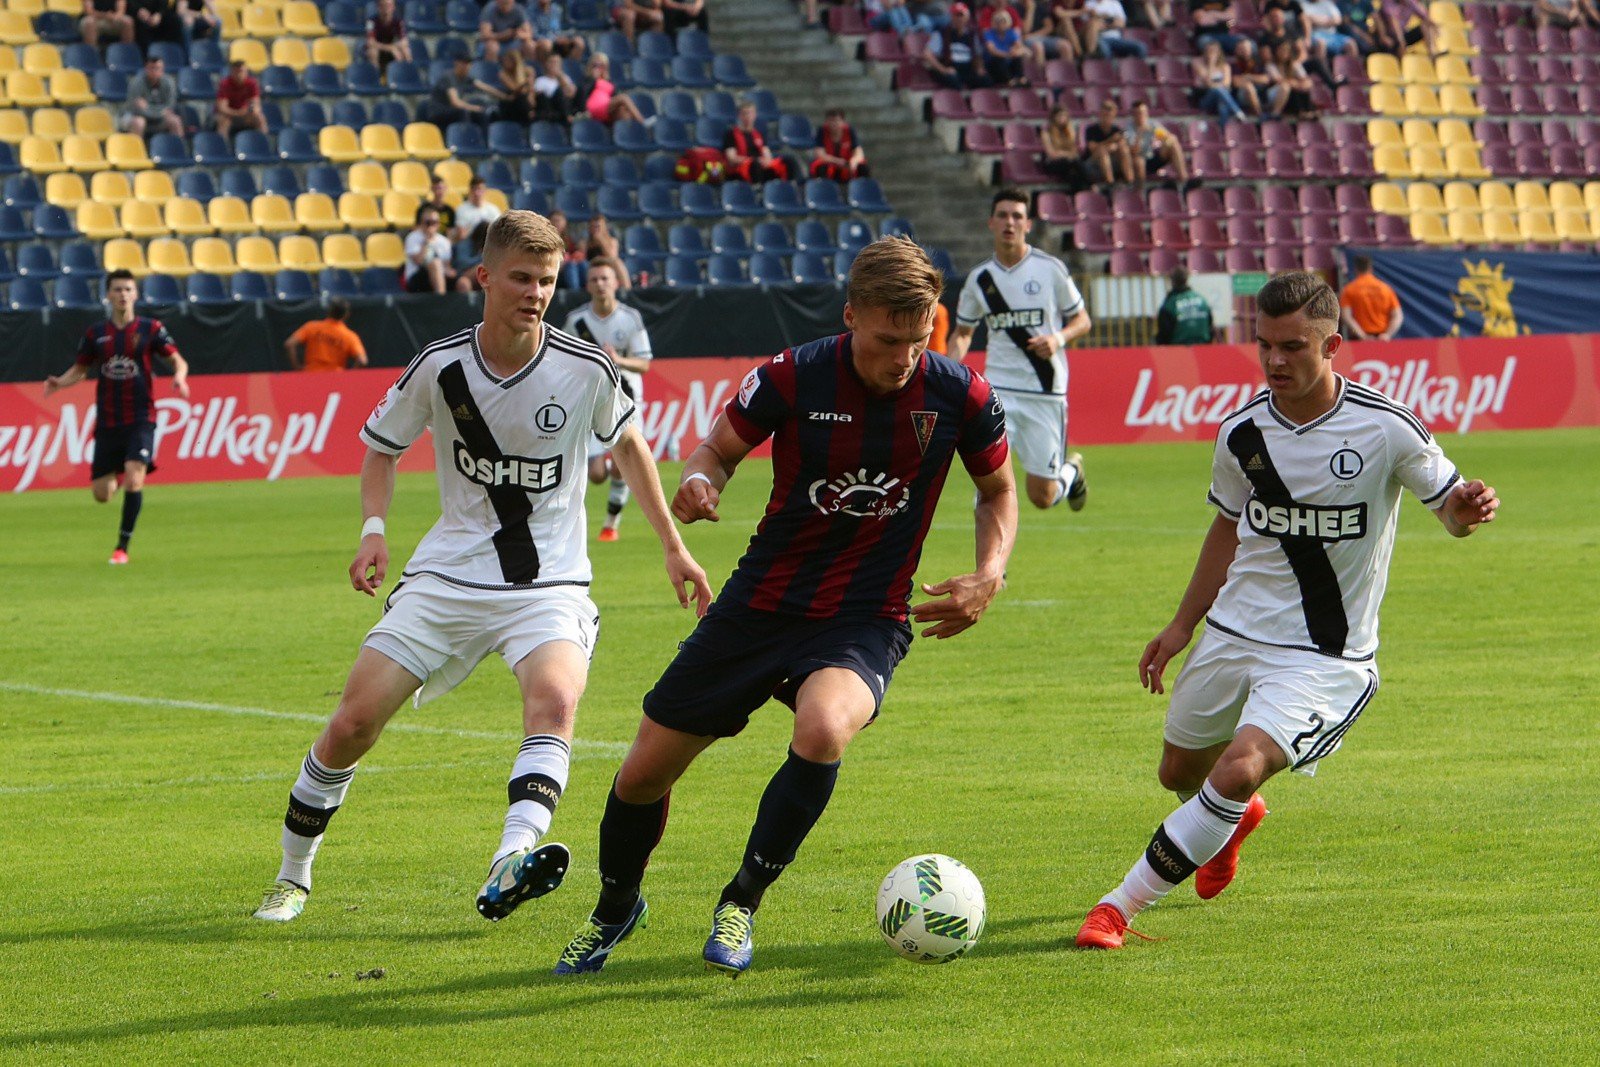 Młodzieżowa piłka nożna to sport indywidualny" | Polska Times